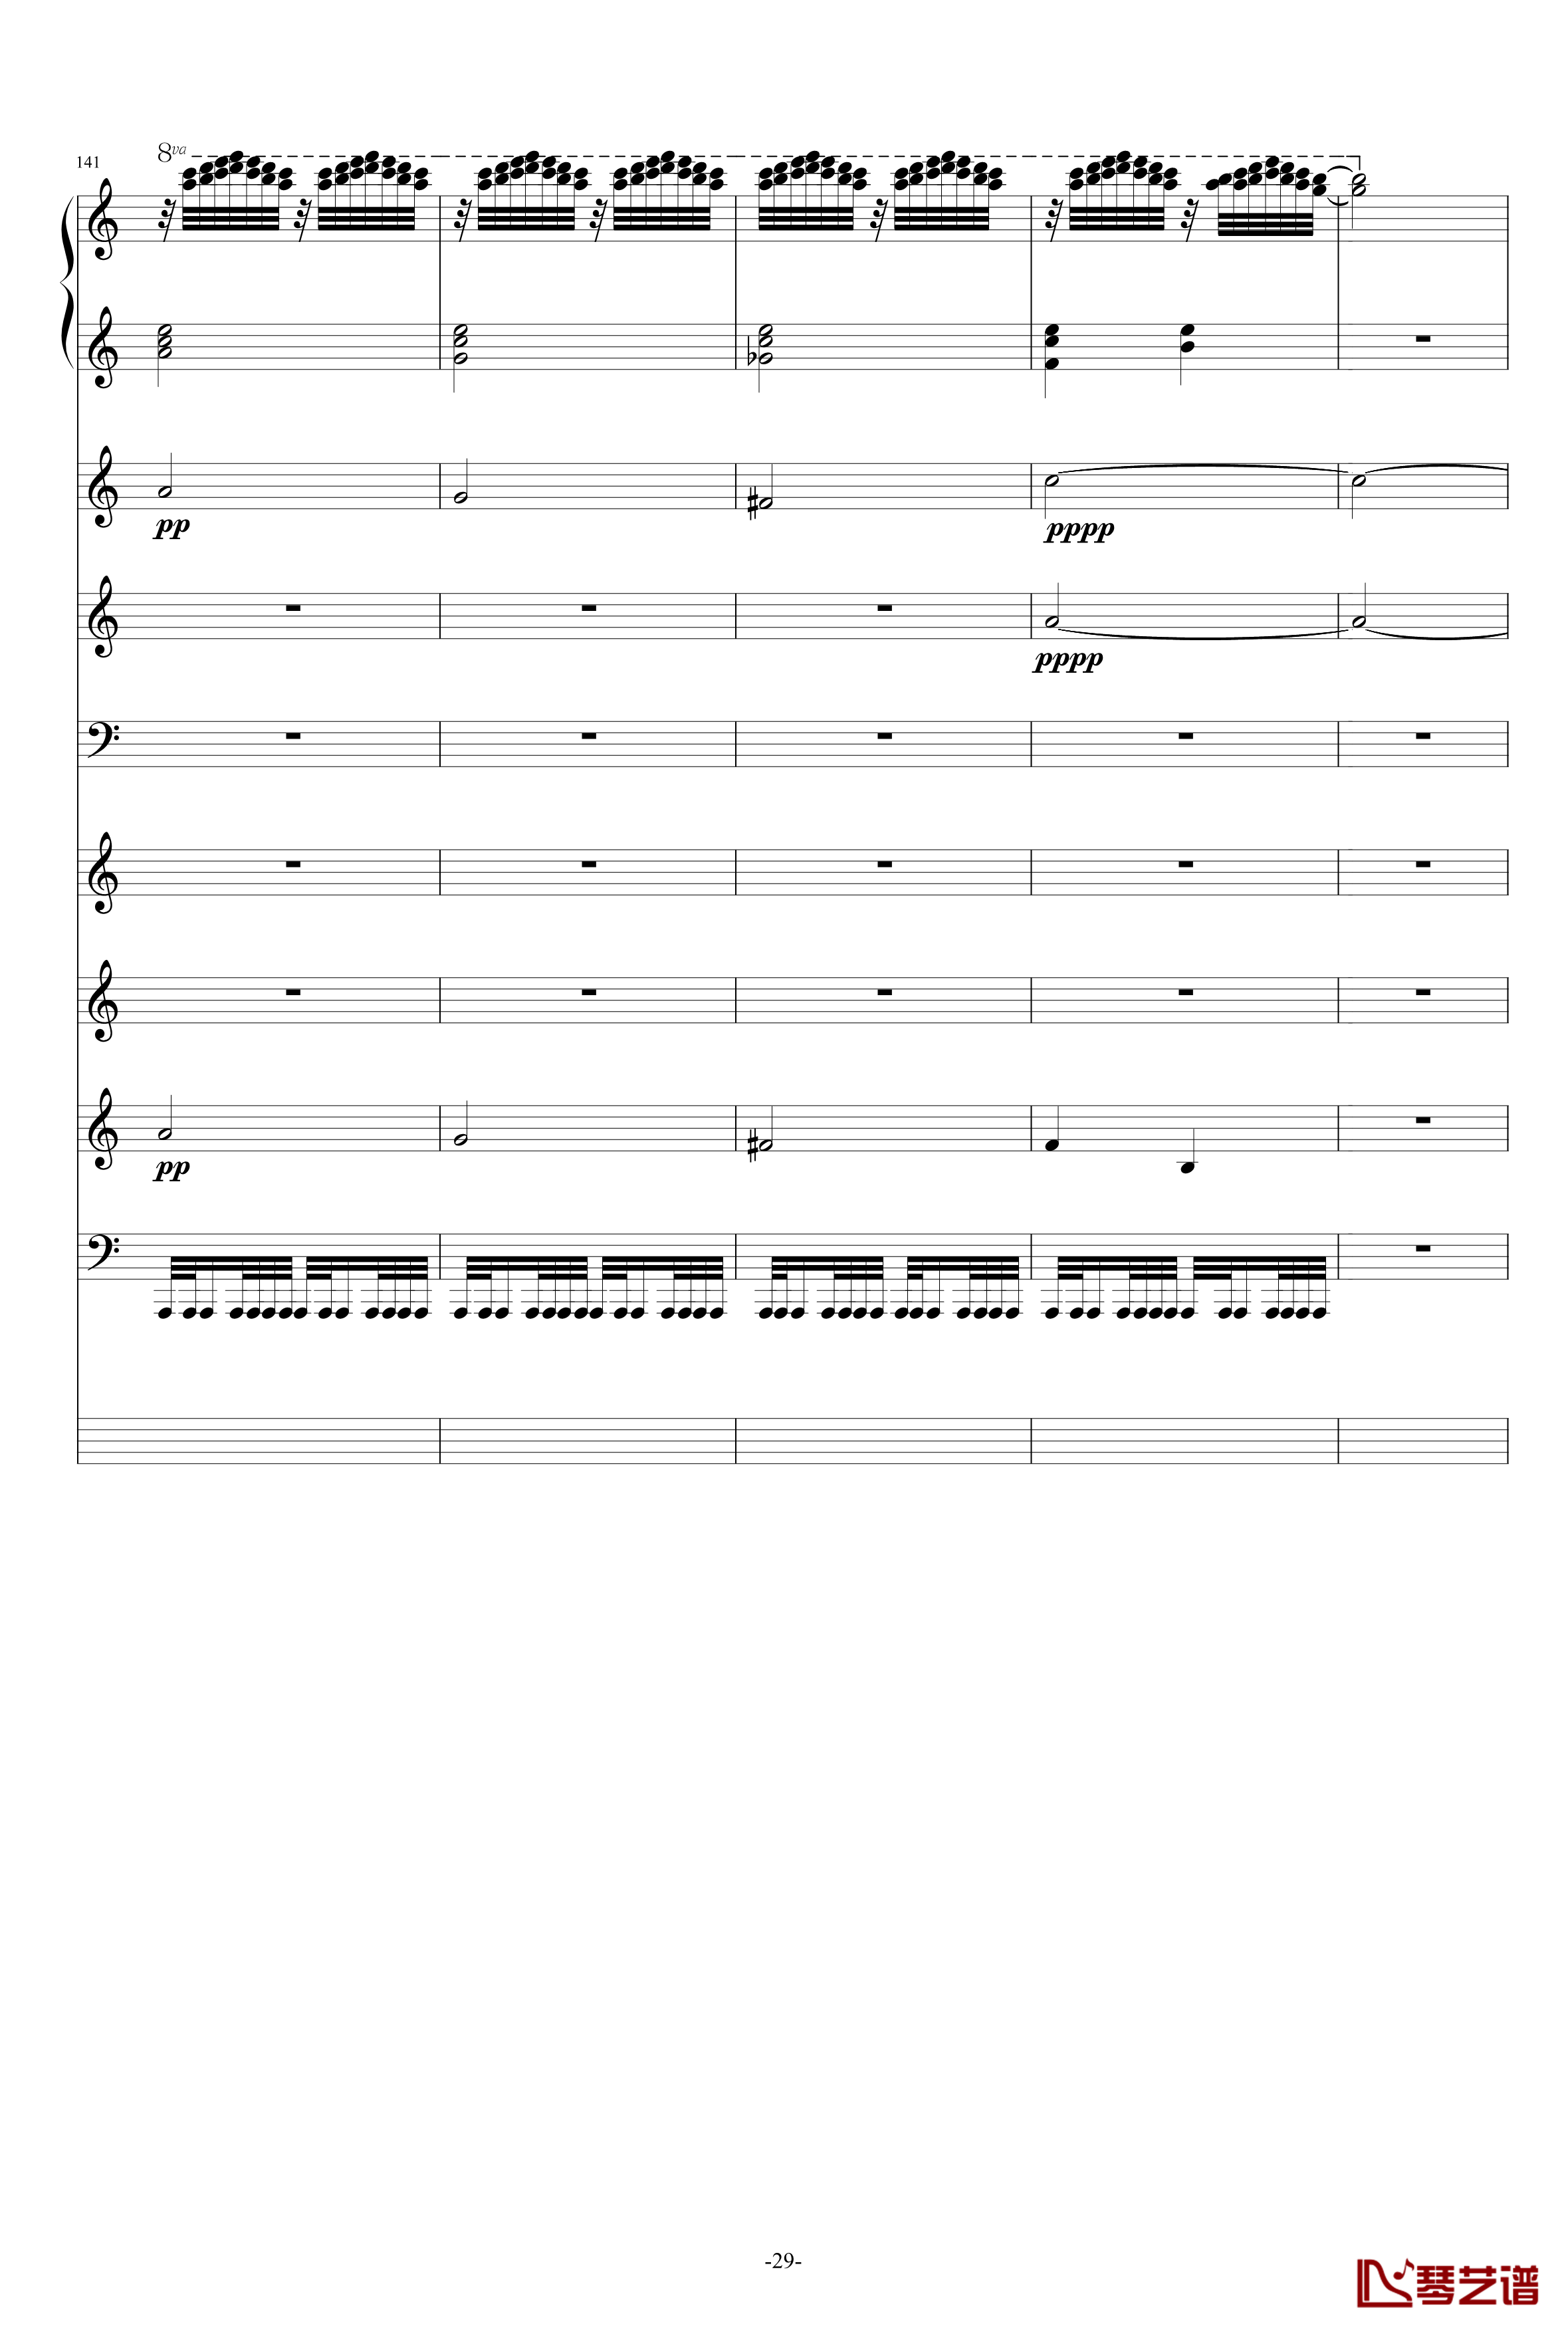 巴兰榭狂想曲钢琴谱-卓越之剑-总谱29